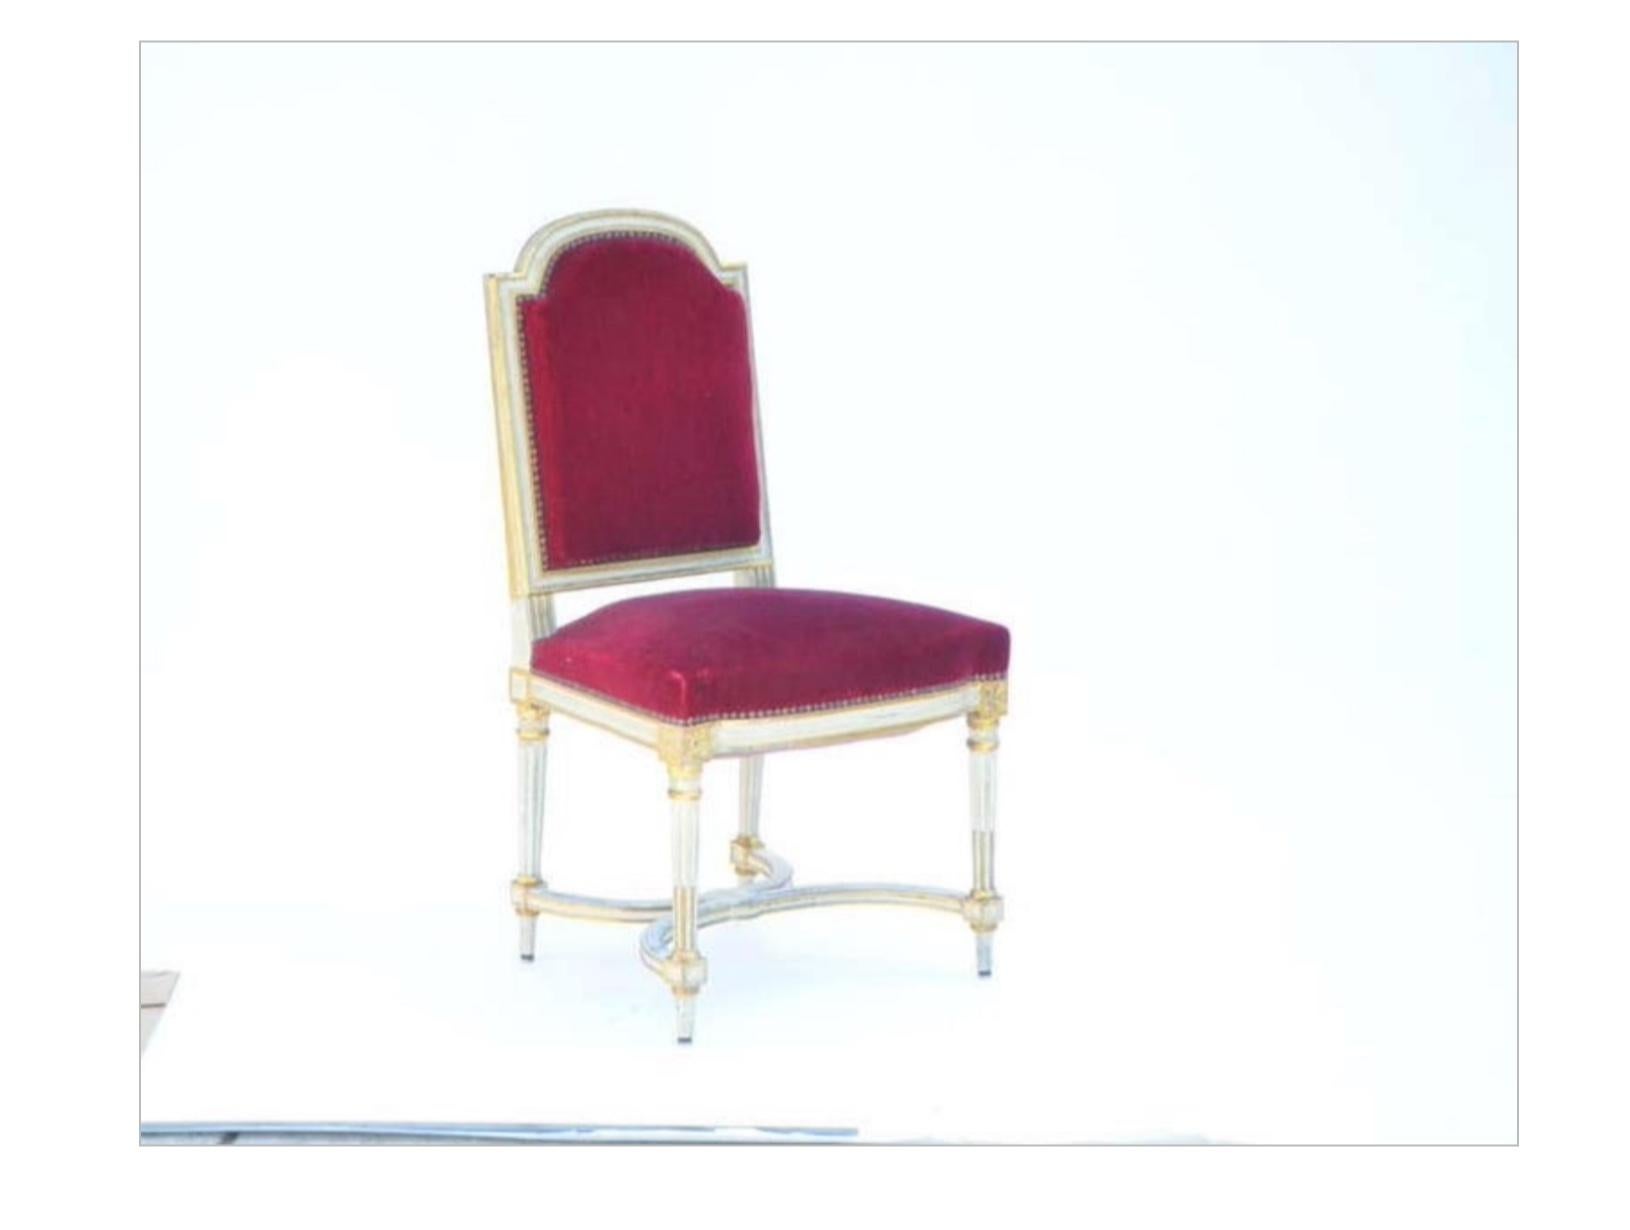 5 Stühle aus rotem, schickem, karminrotem Samt im Stil von Maison Jansen. Sehr robust und bequem. Die Originalpolsterung ist Vintage, aber in gutem Zustand. Sie können auch mit C.O.M. aufgepolstert werden.